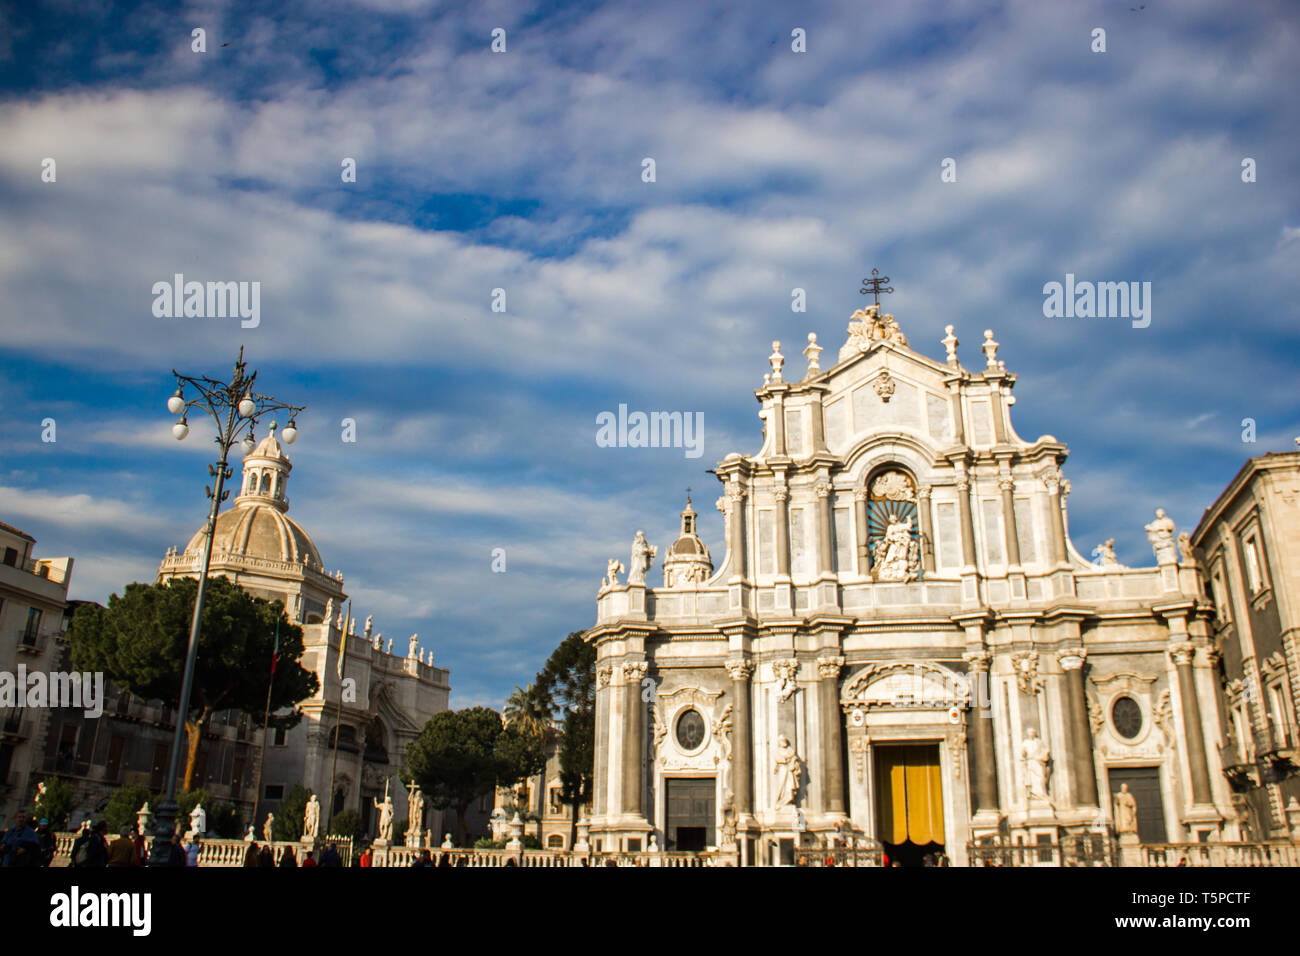 Die Kathedrale von Catania Blick auf den Platz und die barocke Architektur der Basilika und Dom Stockfoto